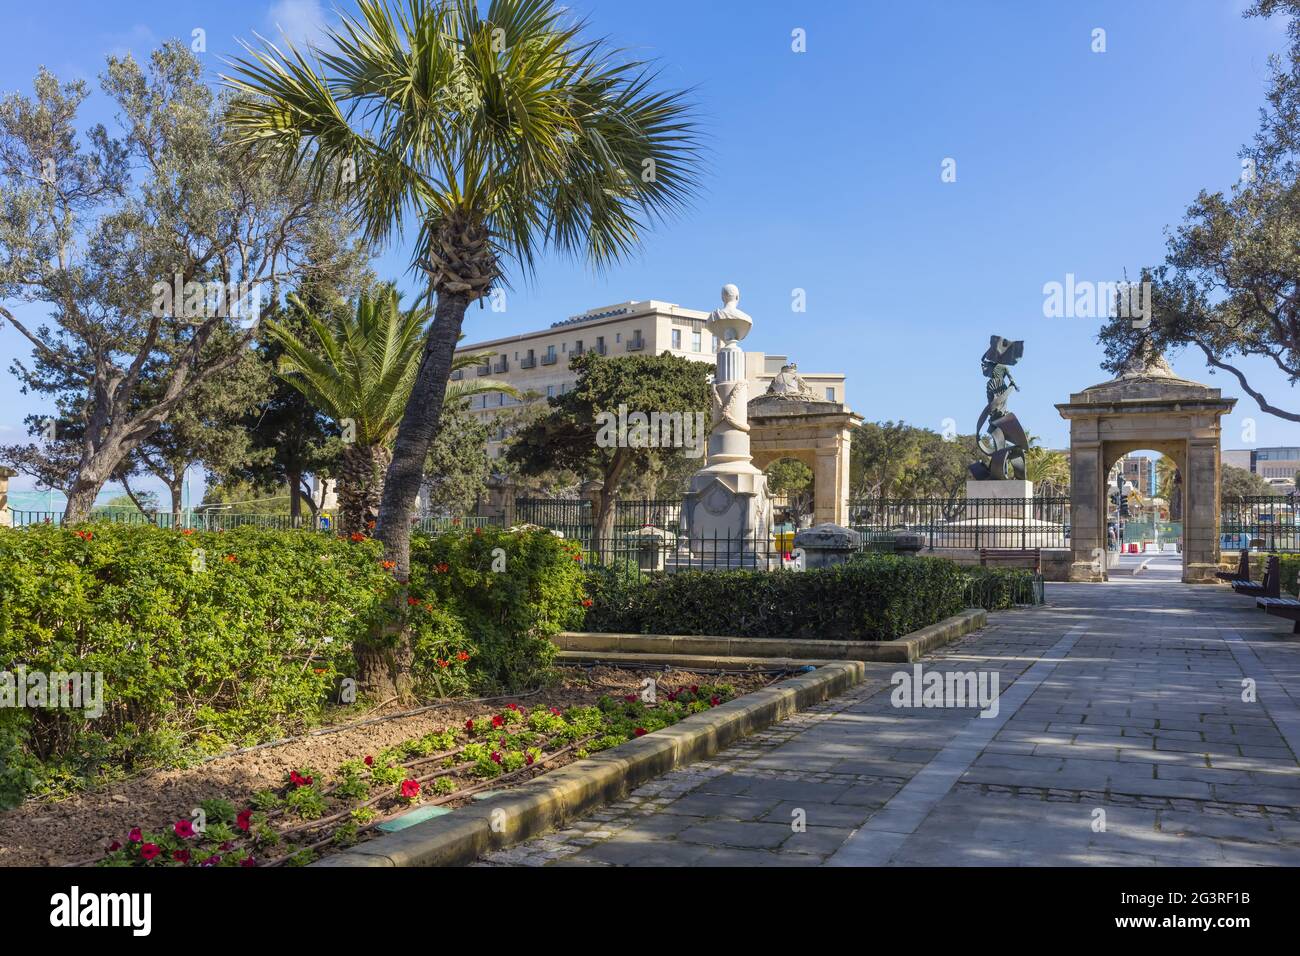 Malta Valletta Floriana: The Mall Gardens - green Malta - Monument Stock Photo